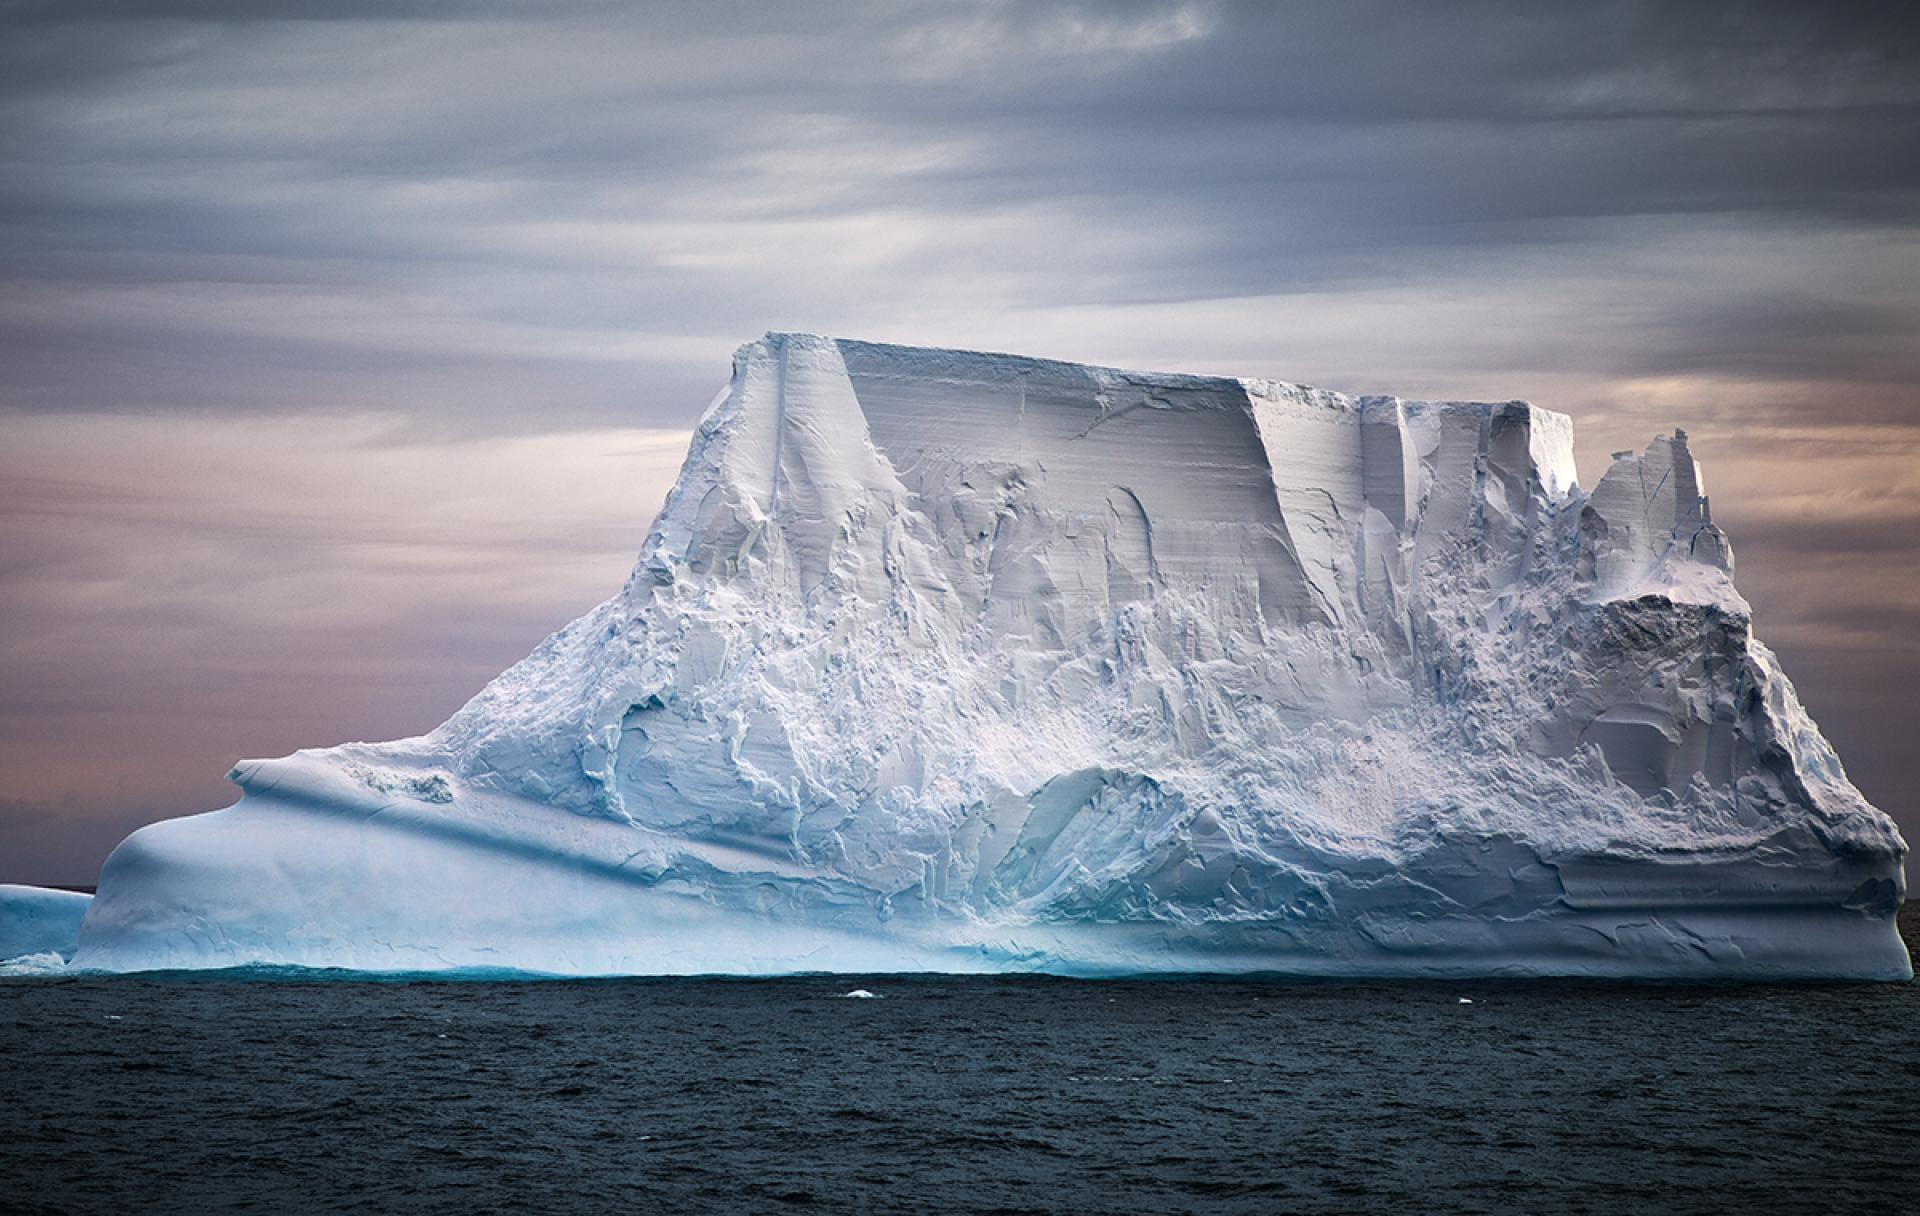 London Photography Awards Winner - Huge Iceberg